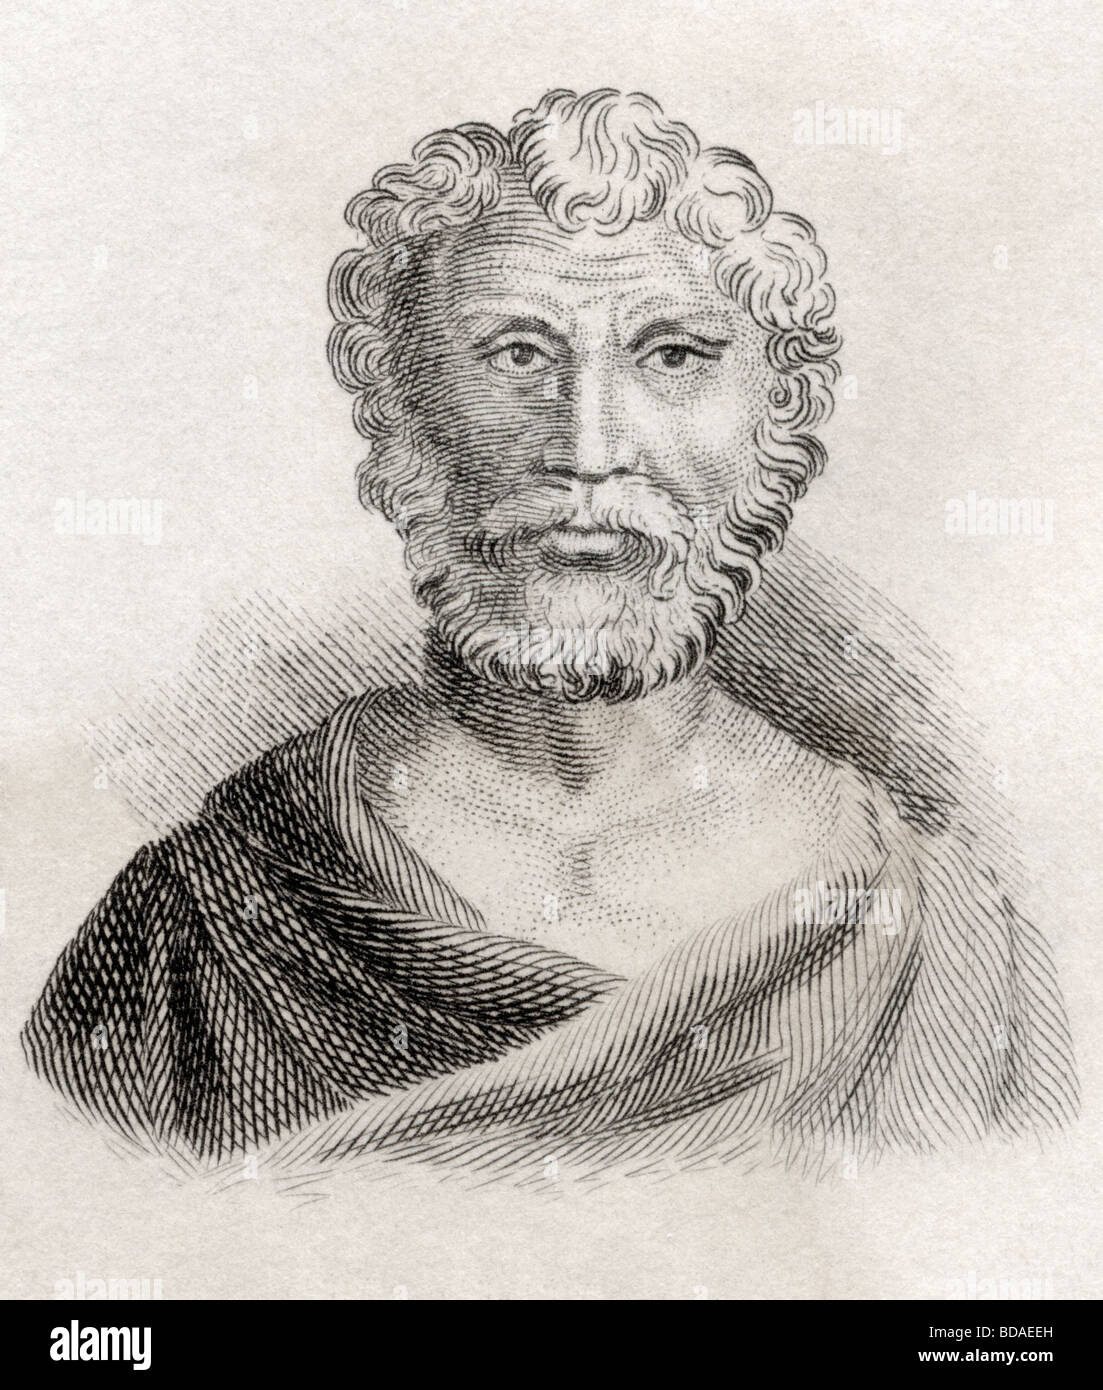 Quintus junius rusticus stoic philosopher portrait hi-res stock ...